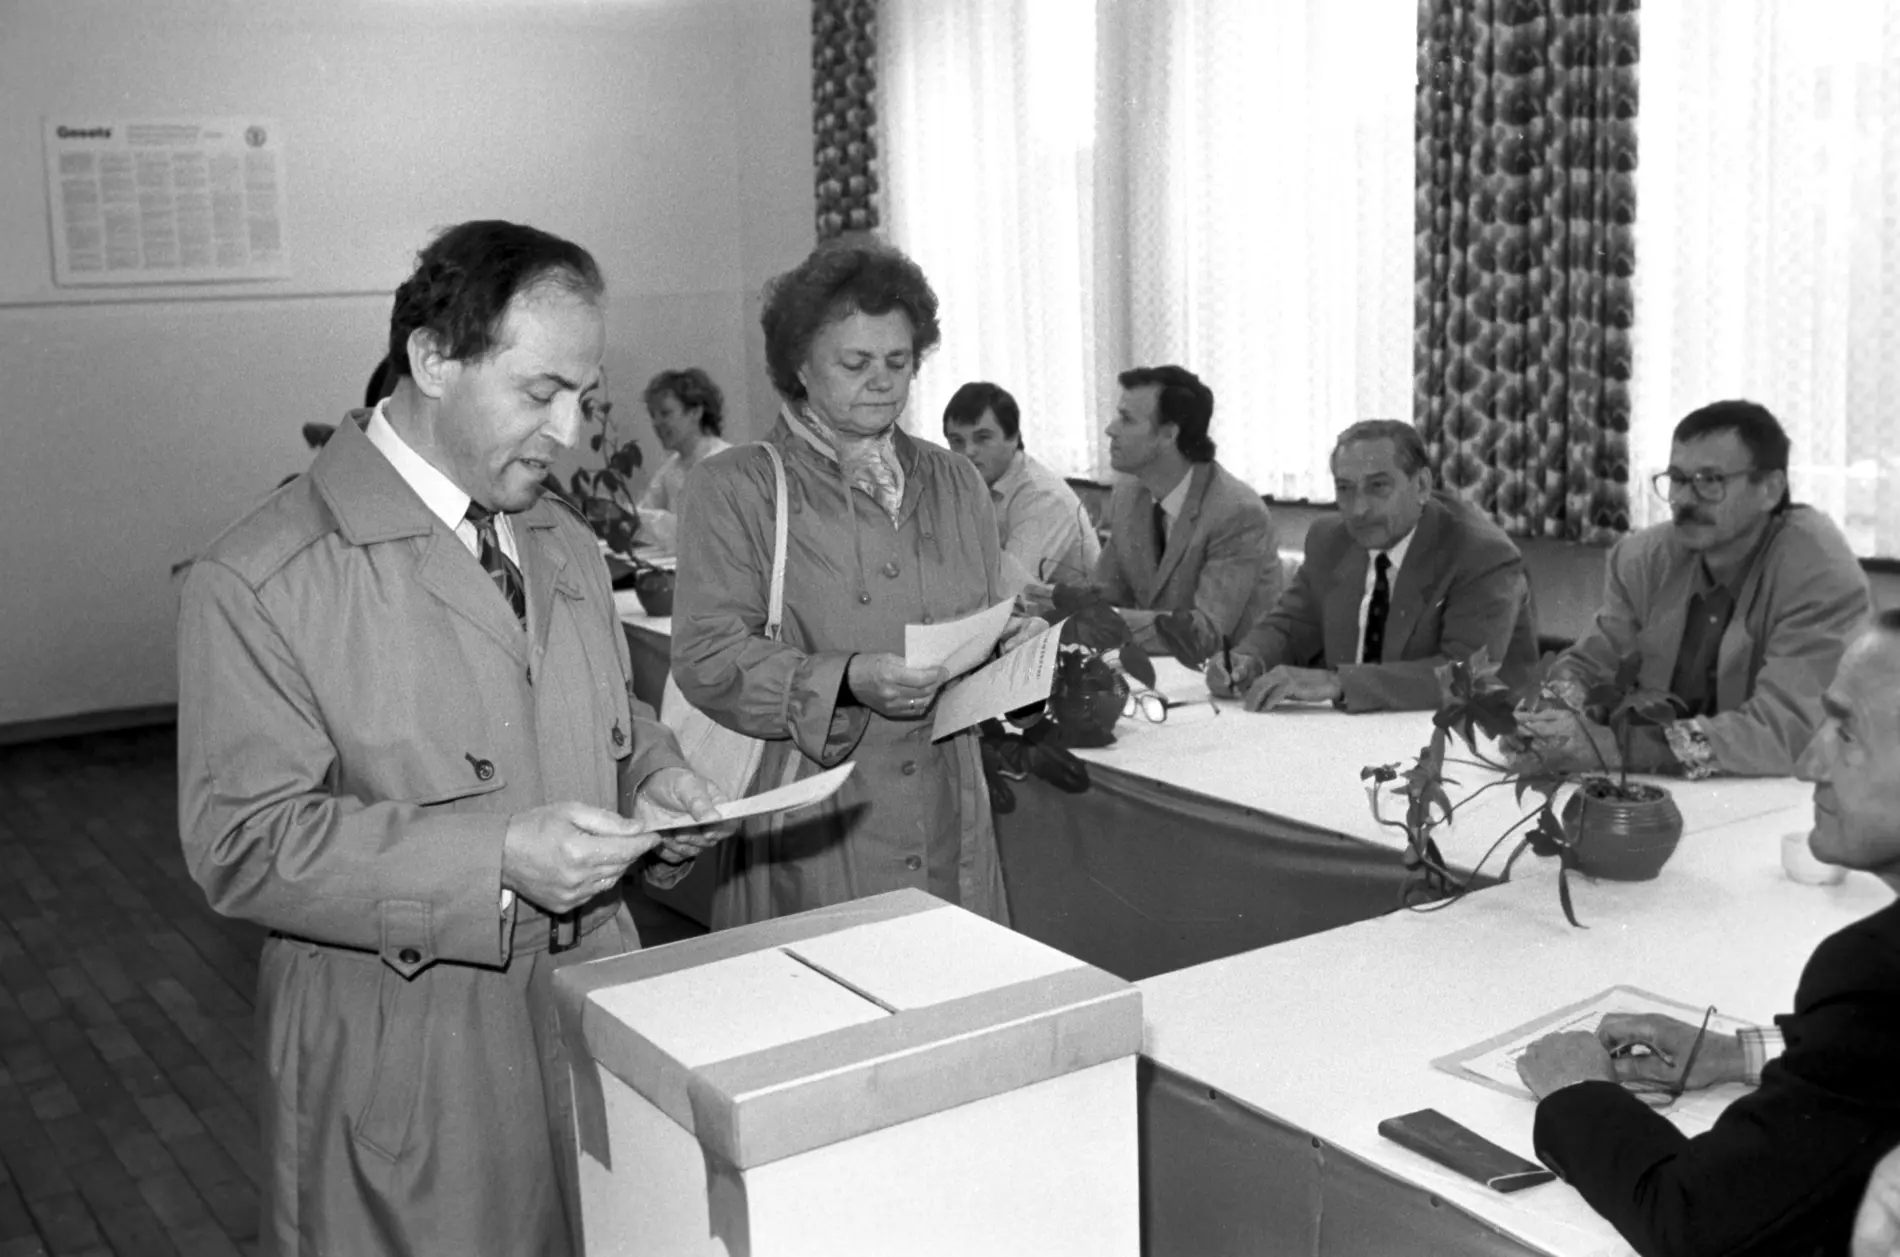 Bei der Kommunalwahl am 07.05.1989 in Karl-Marx-Stadt (heute Chemnitz).